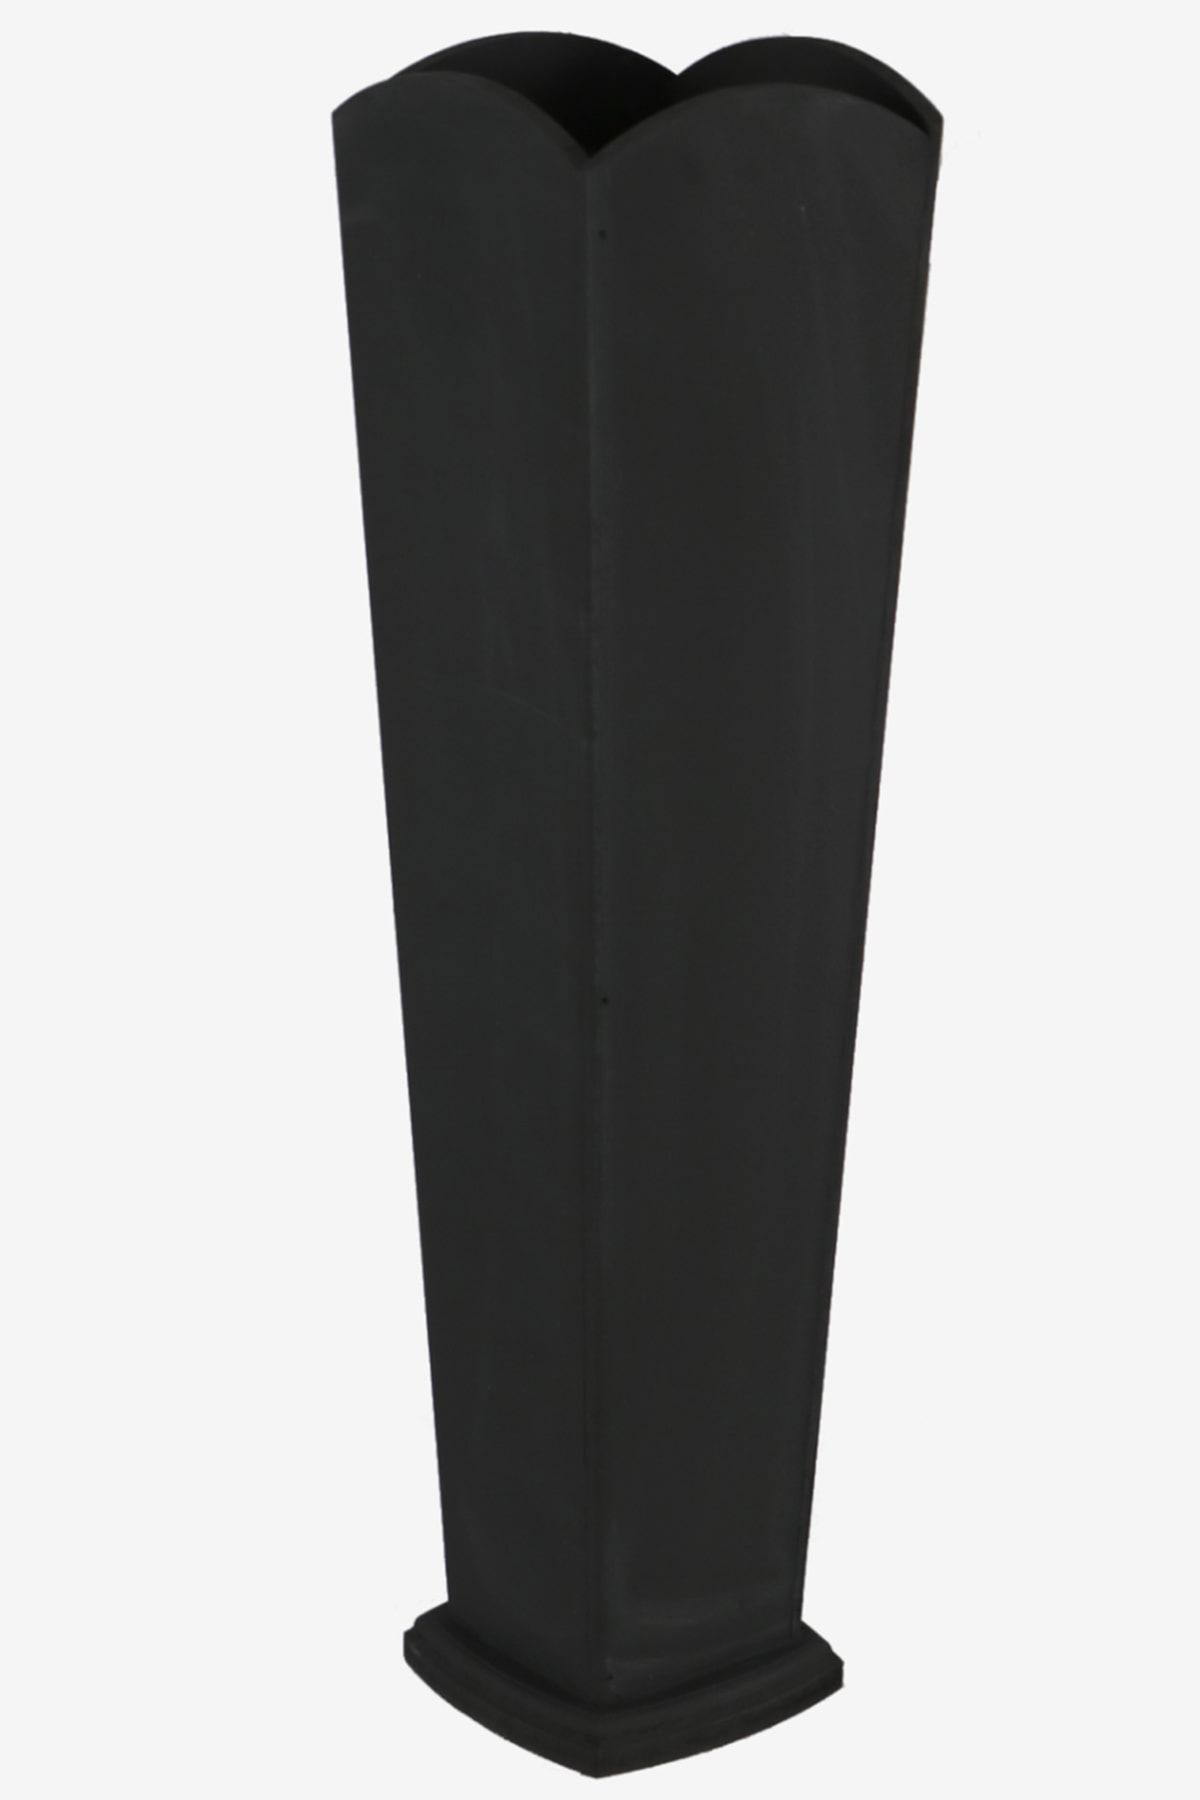 HobiMax 55 Cm Dekoratif Ahşap Vazo Siyah